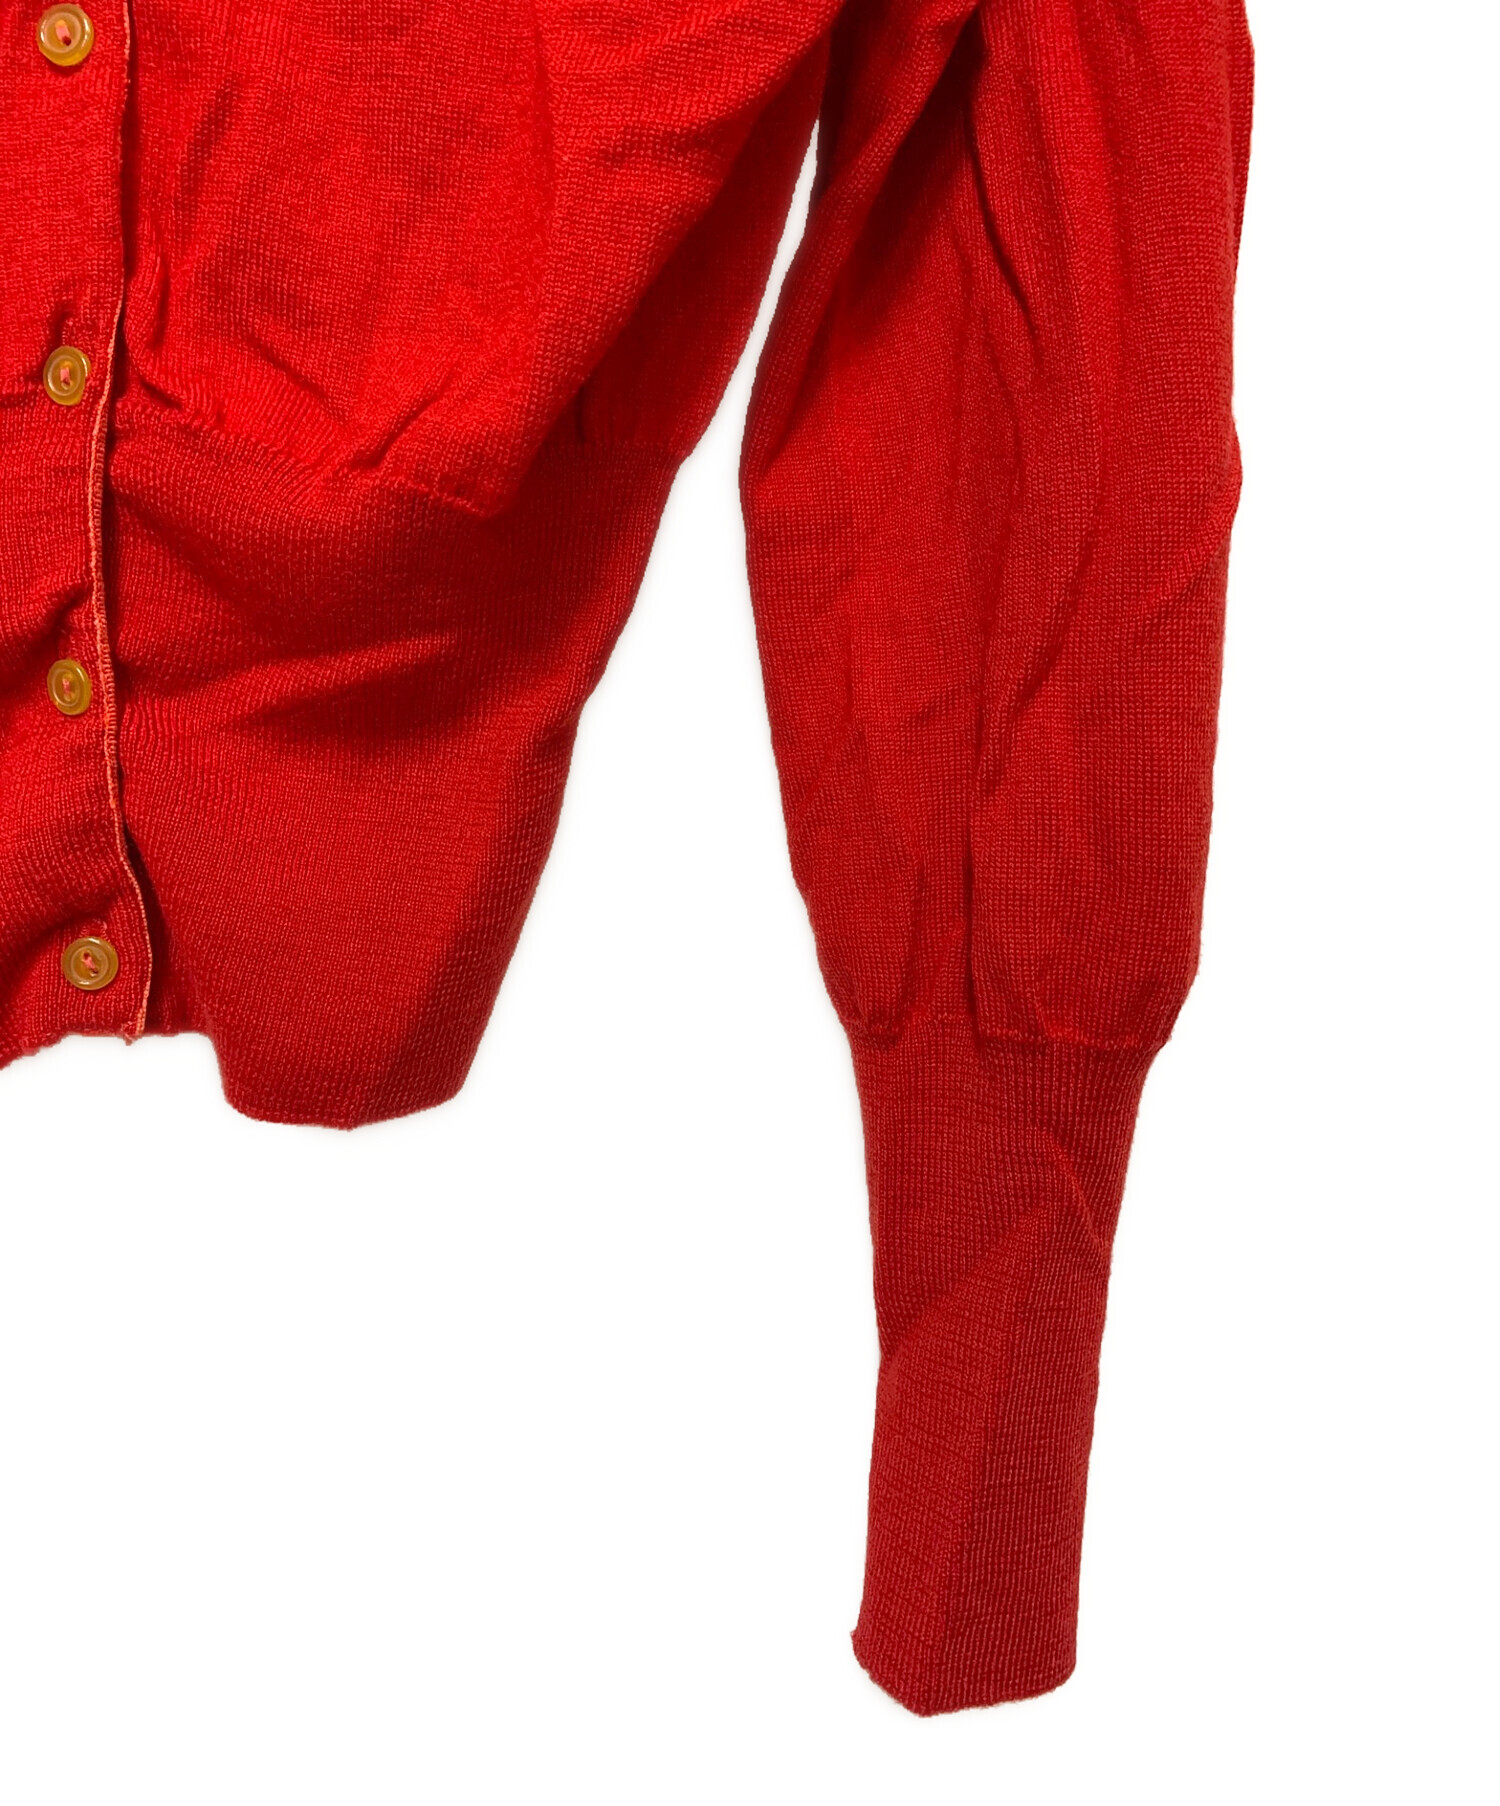 Vivienne Westwood RED LABEL (ヴィヴィアンウエストウッドレッドレーベル) ロゴ 刺繍ニット カーディガン レッド  サイズ:無し